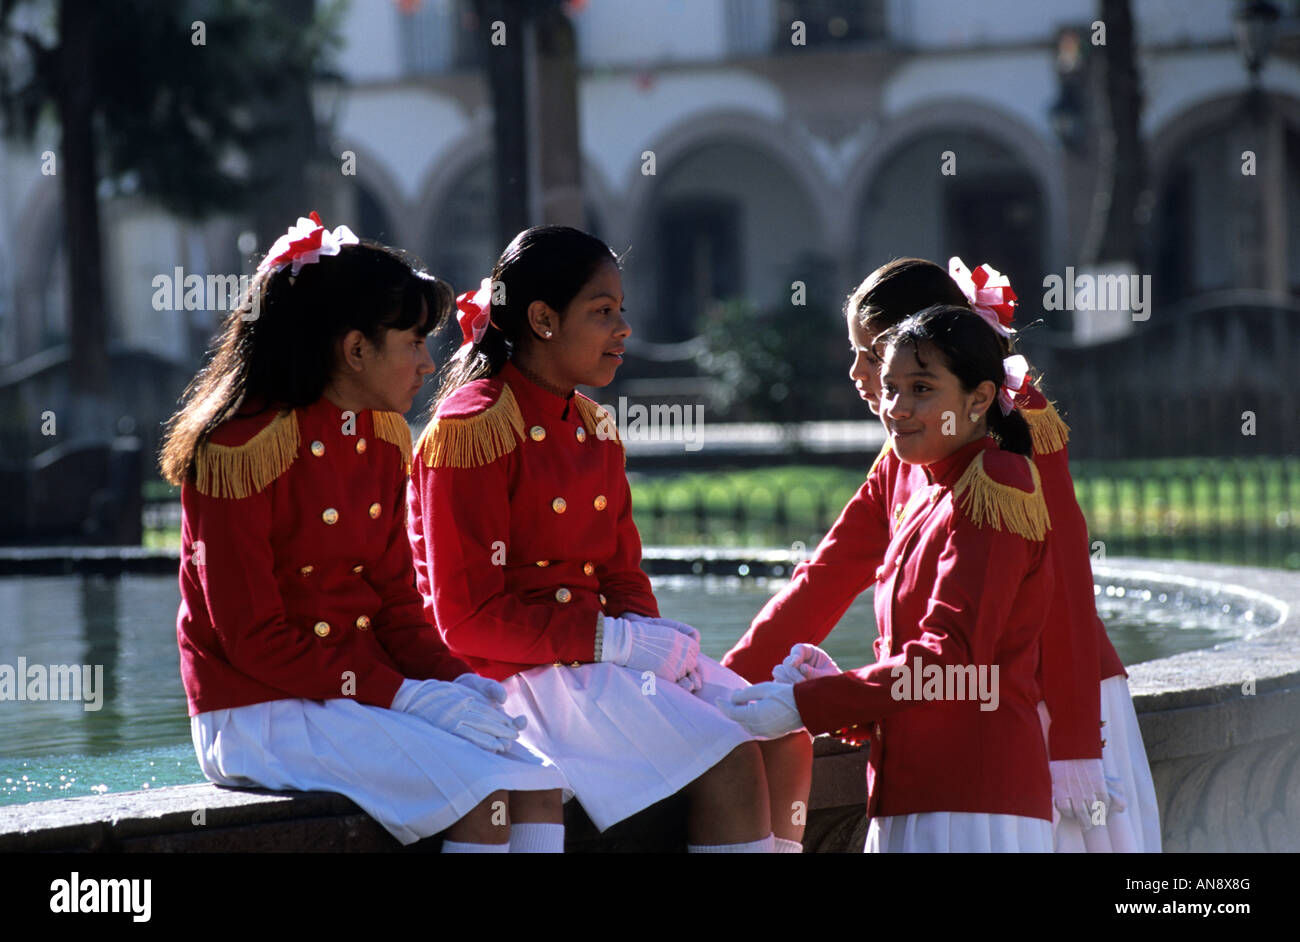 Mexico school uniform fotografías e imágenes de alta resolución - Alamy